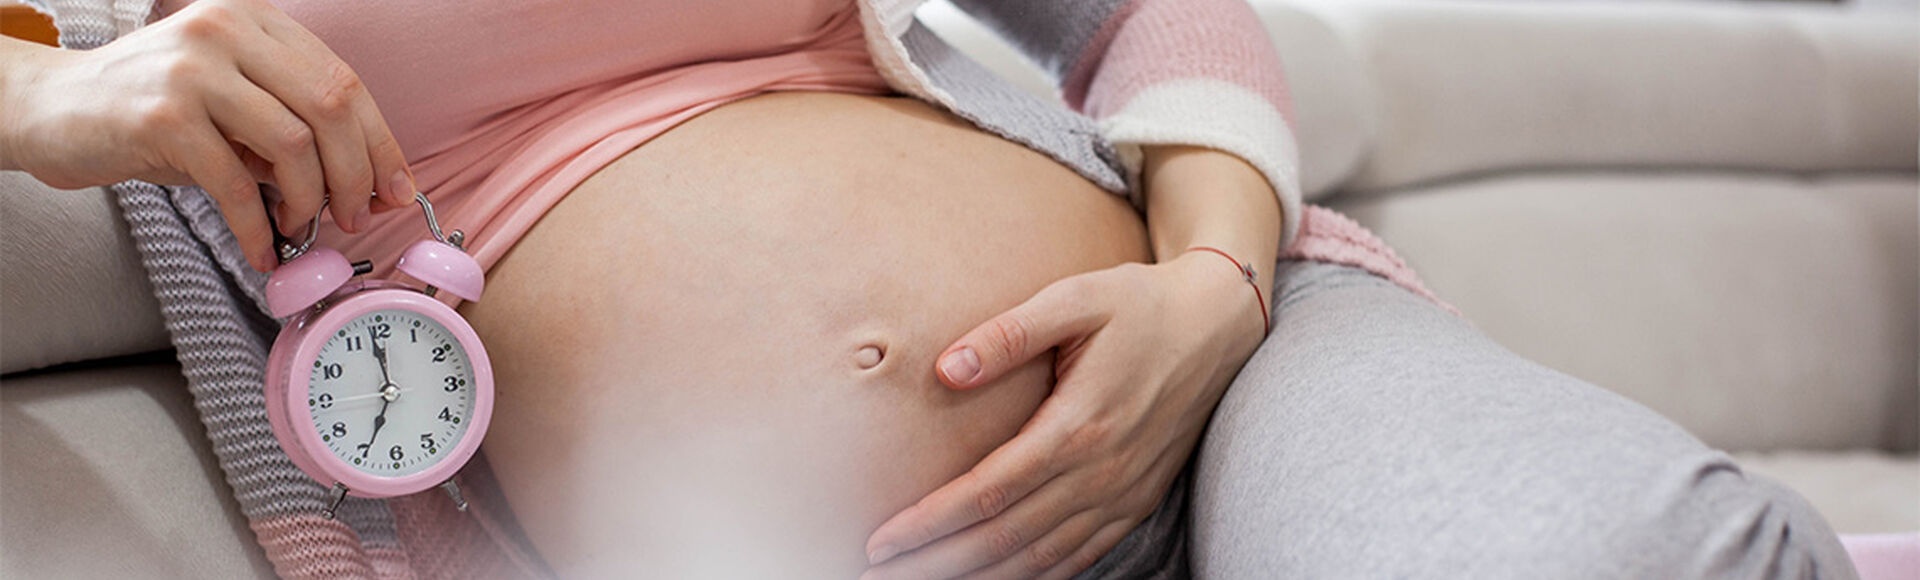 Parto restrasado en la semana 41 de embarazo | Más Abrazos by Huggies